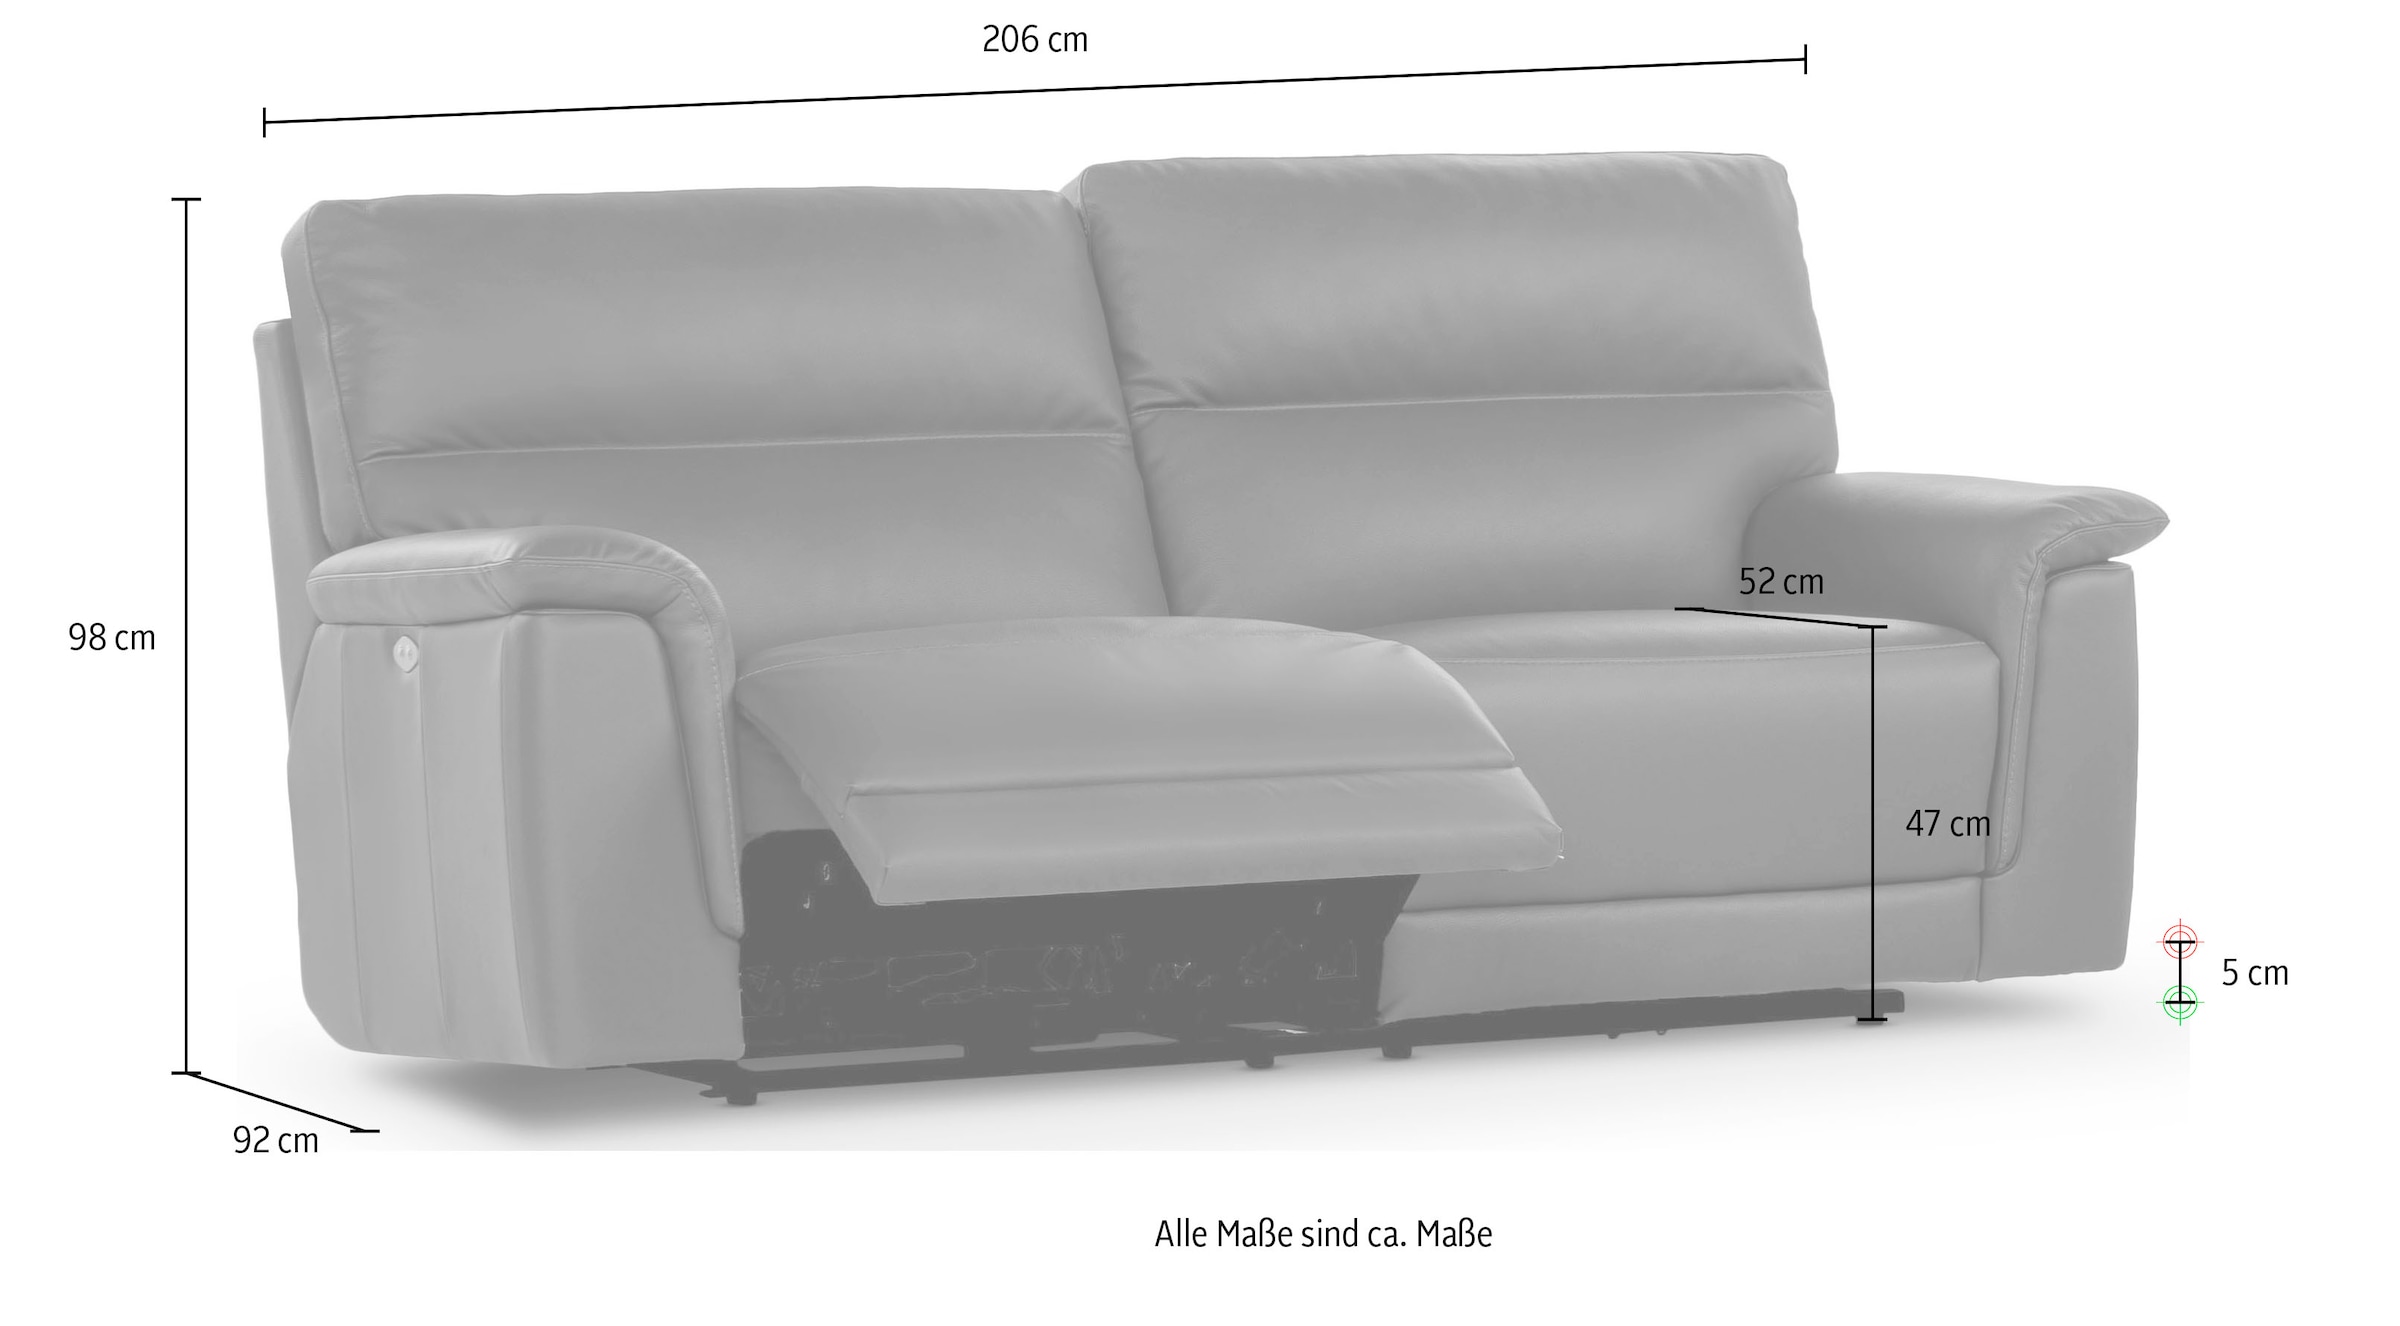 CALIA ITALIA 3-Sitzer »Sette«, in Leder, 206 cm Breite, mit elektrischer Relaxfunktion